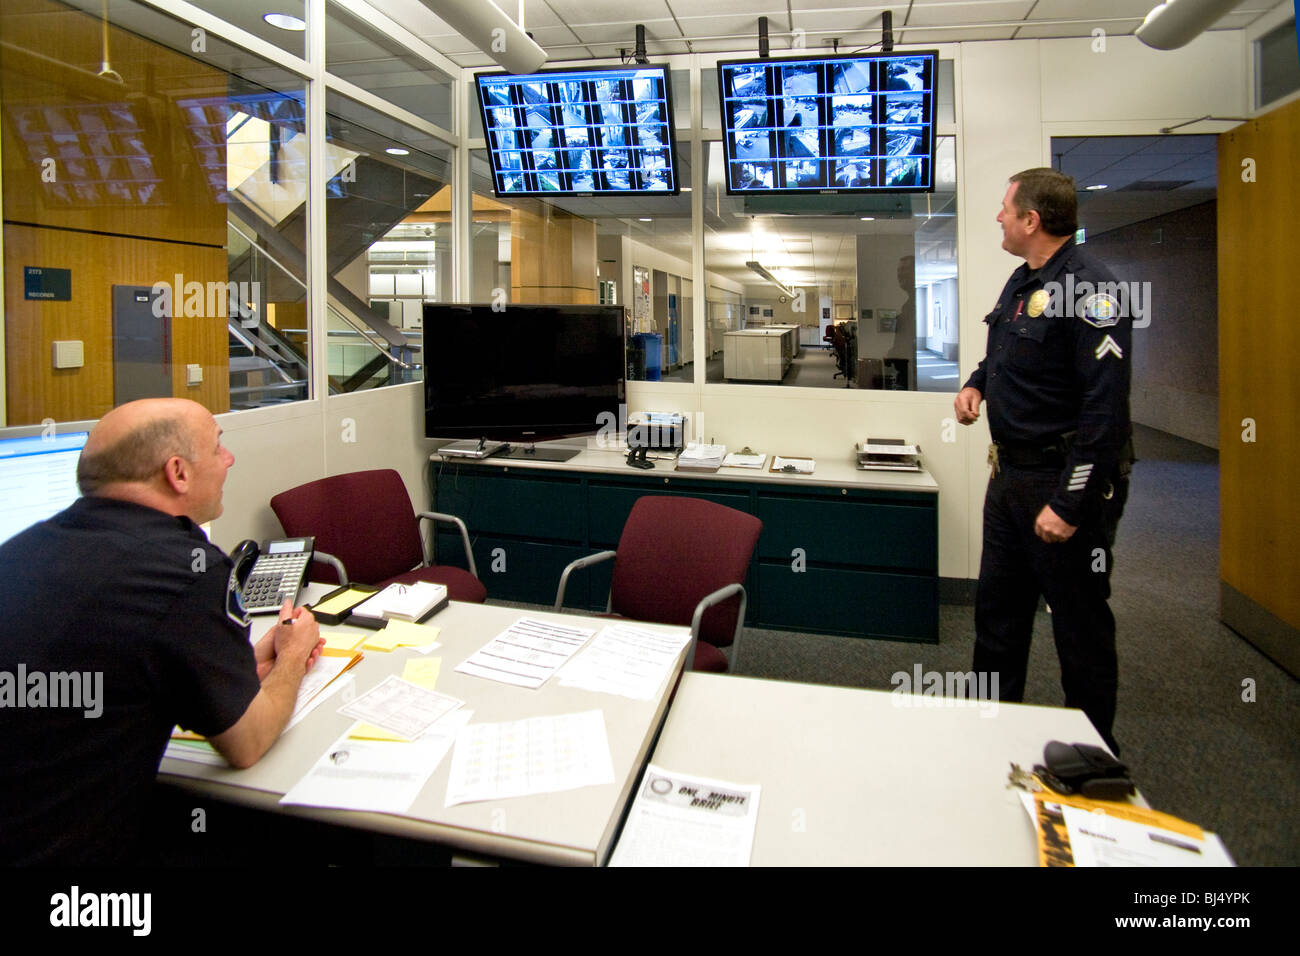 Comando Central en Santa Ana, California, sede de la policía utiliza múltiples imágenes de pantallas de vídeo para controlar las zonas de seguridad. Foto de stock